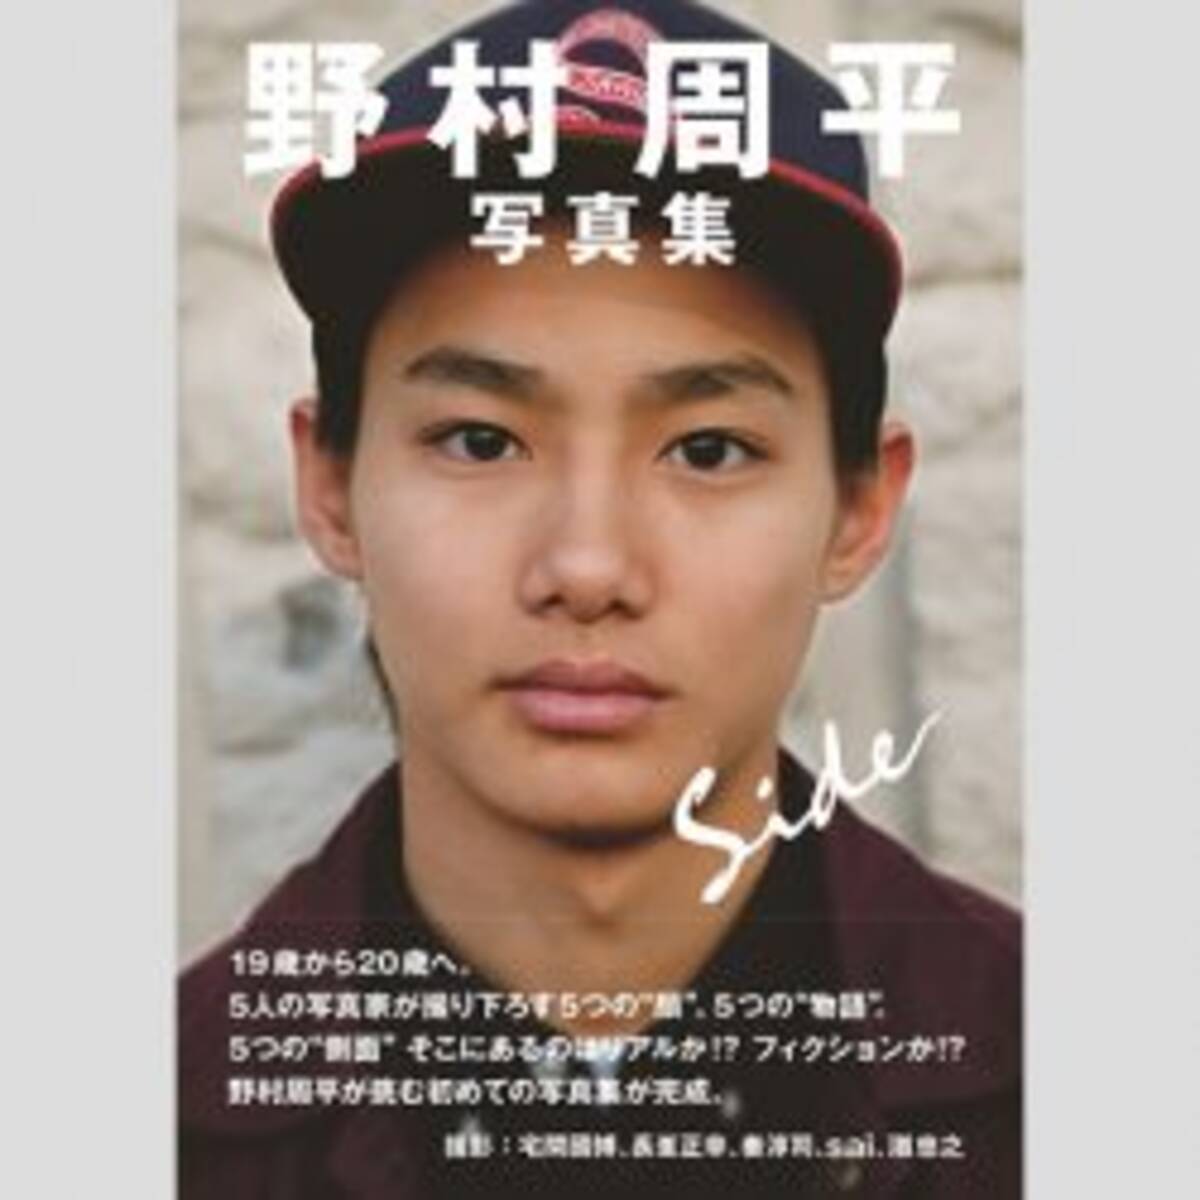 あの逮捕俳優みたい 野村周平 大人のクラブ写真 で噴出したファンの懸念 19年3月4日 エキサイトニュース